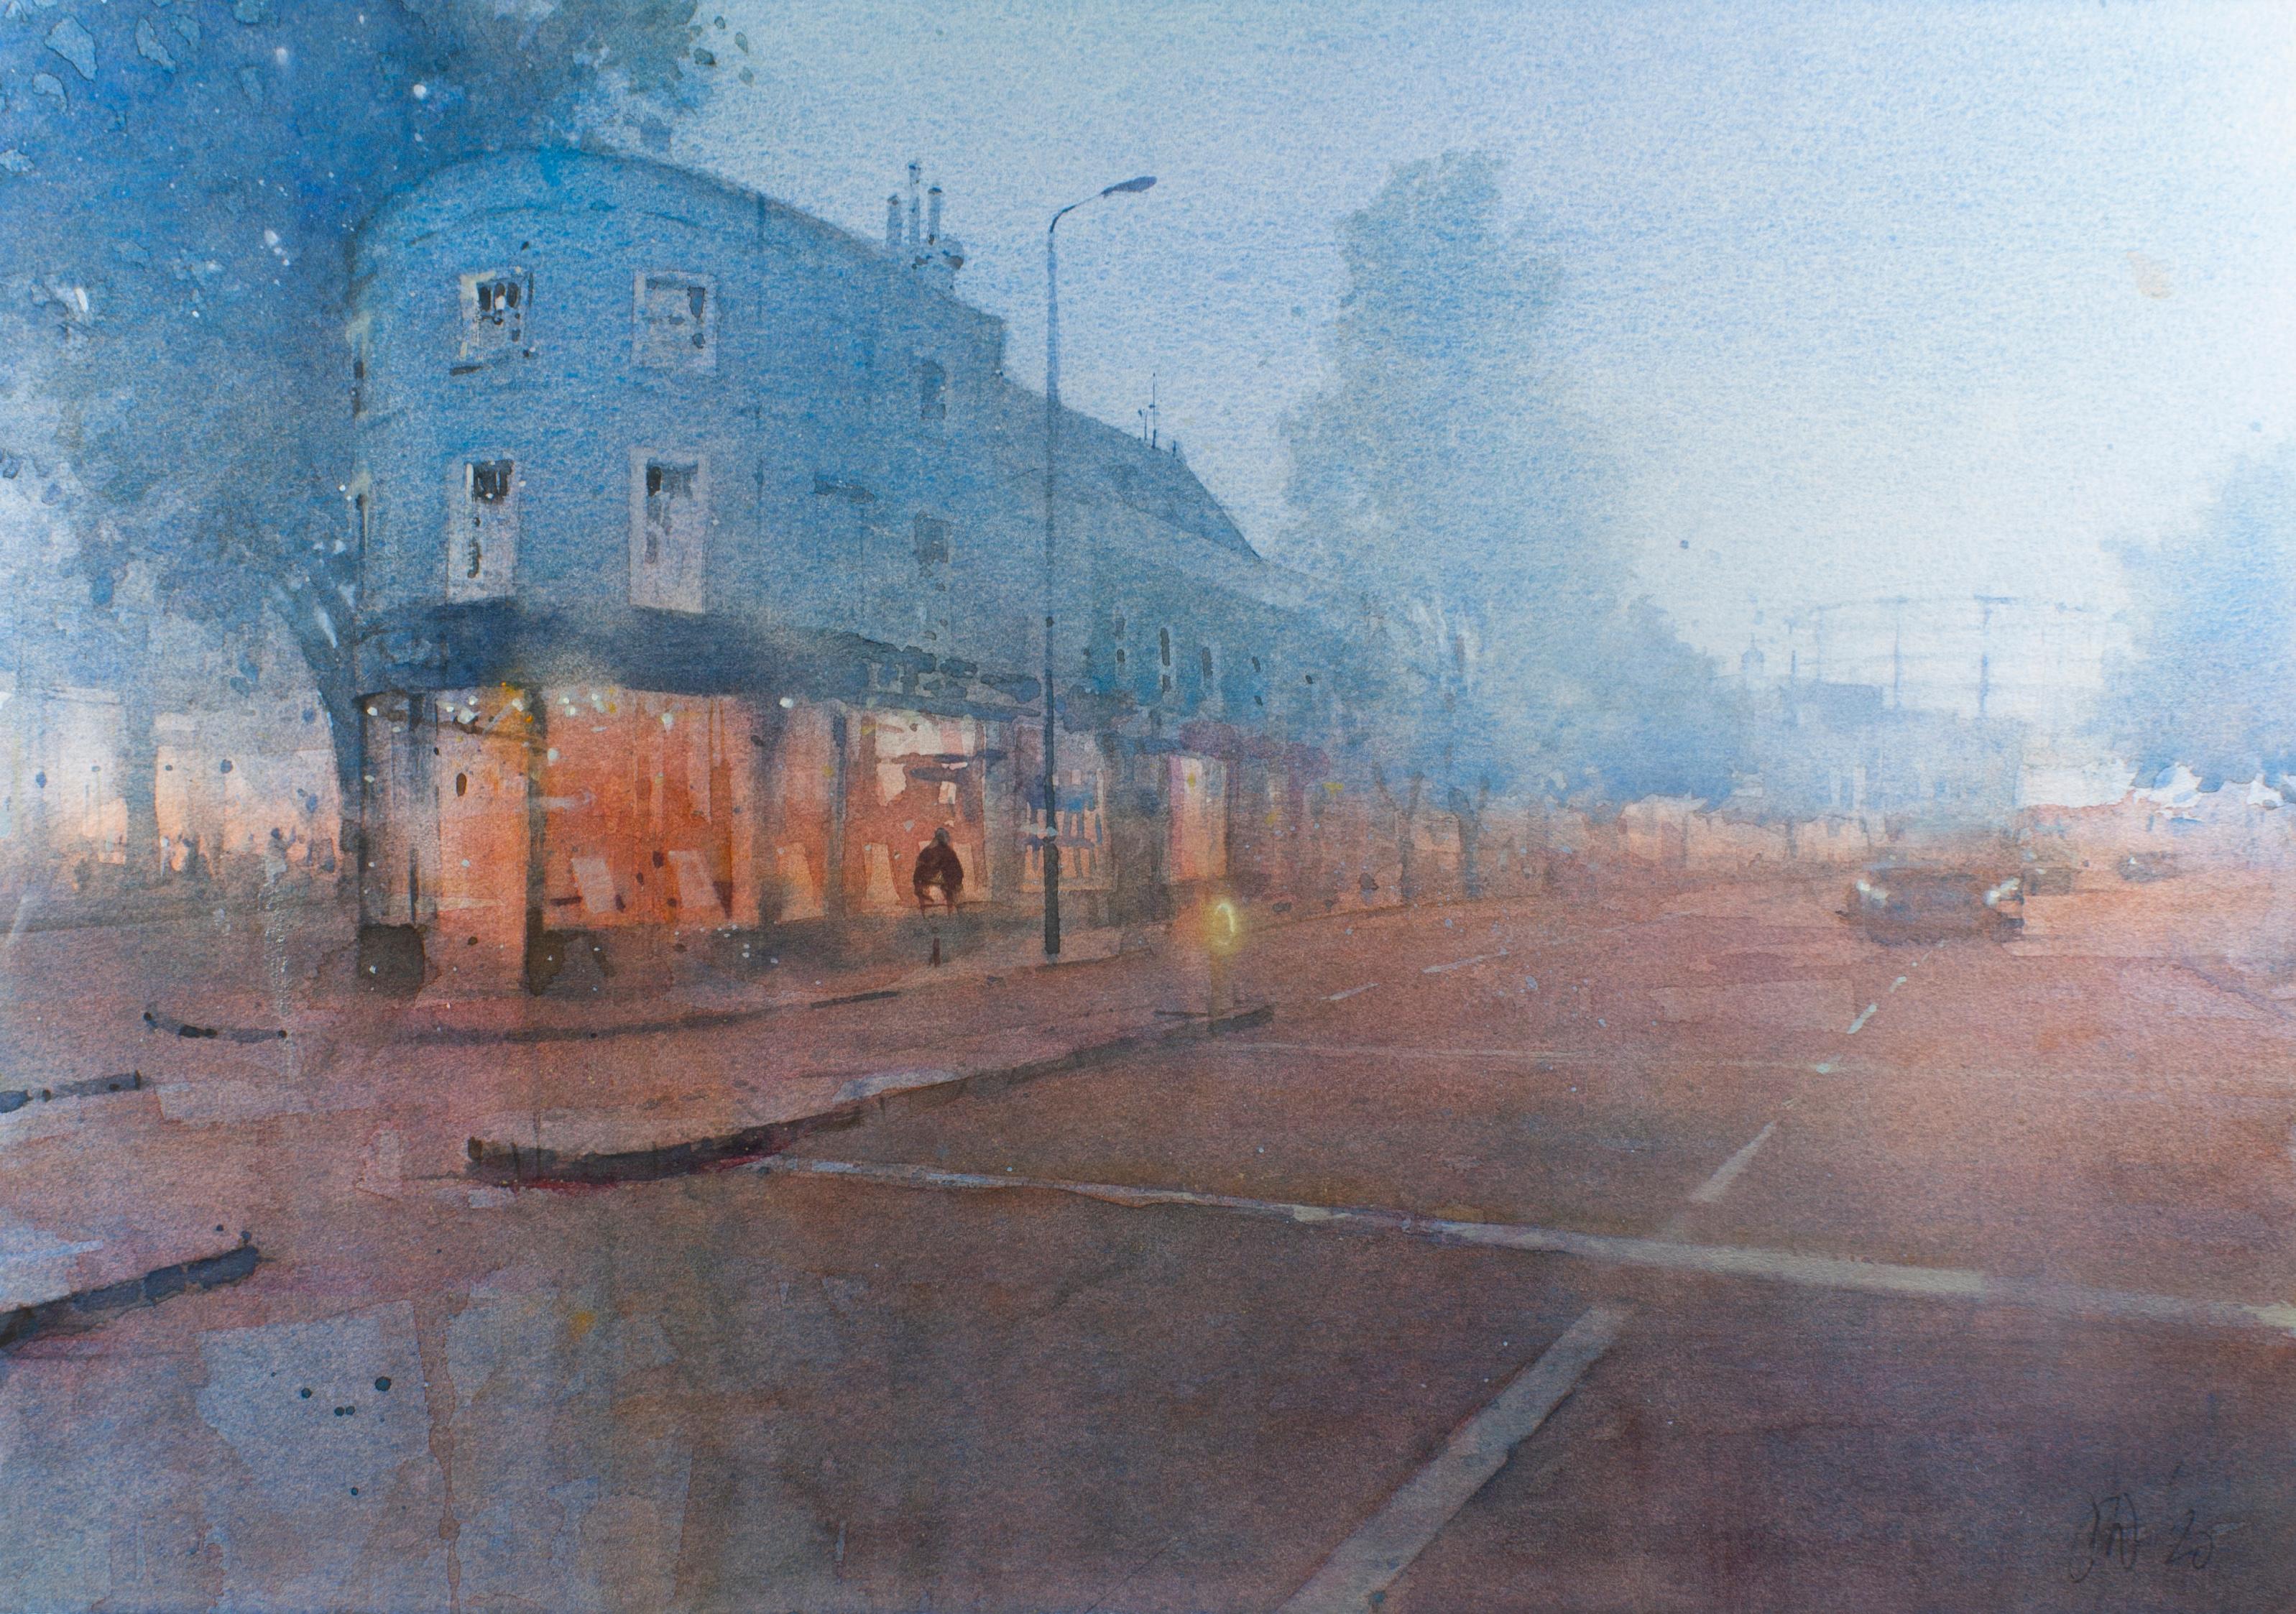 David Walker Landscape Painting - Early Morning Kennington - Dreamy London Street Scene: Watercolour on Paper